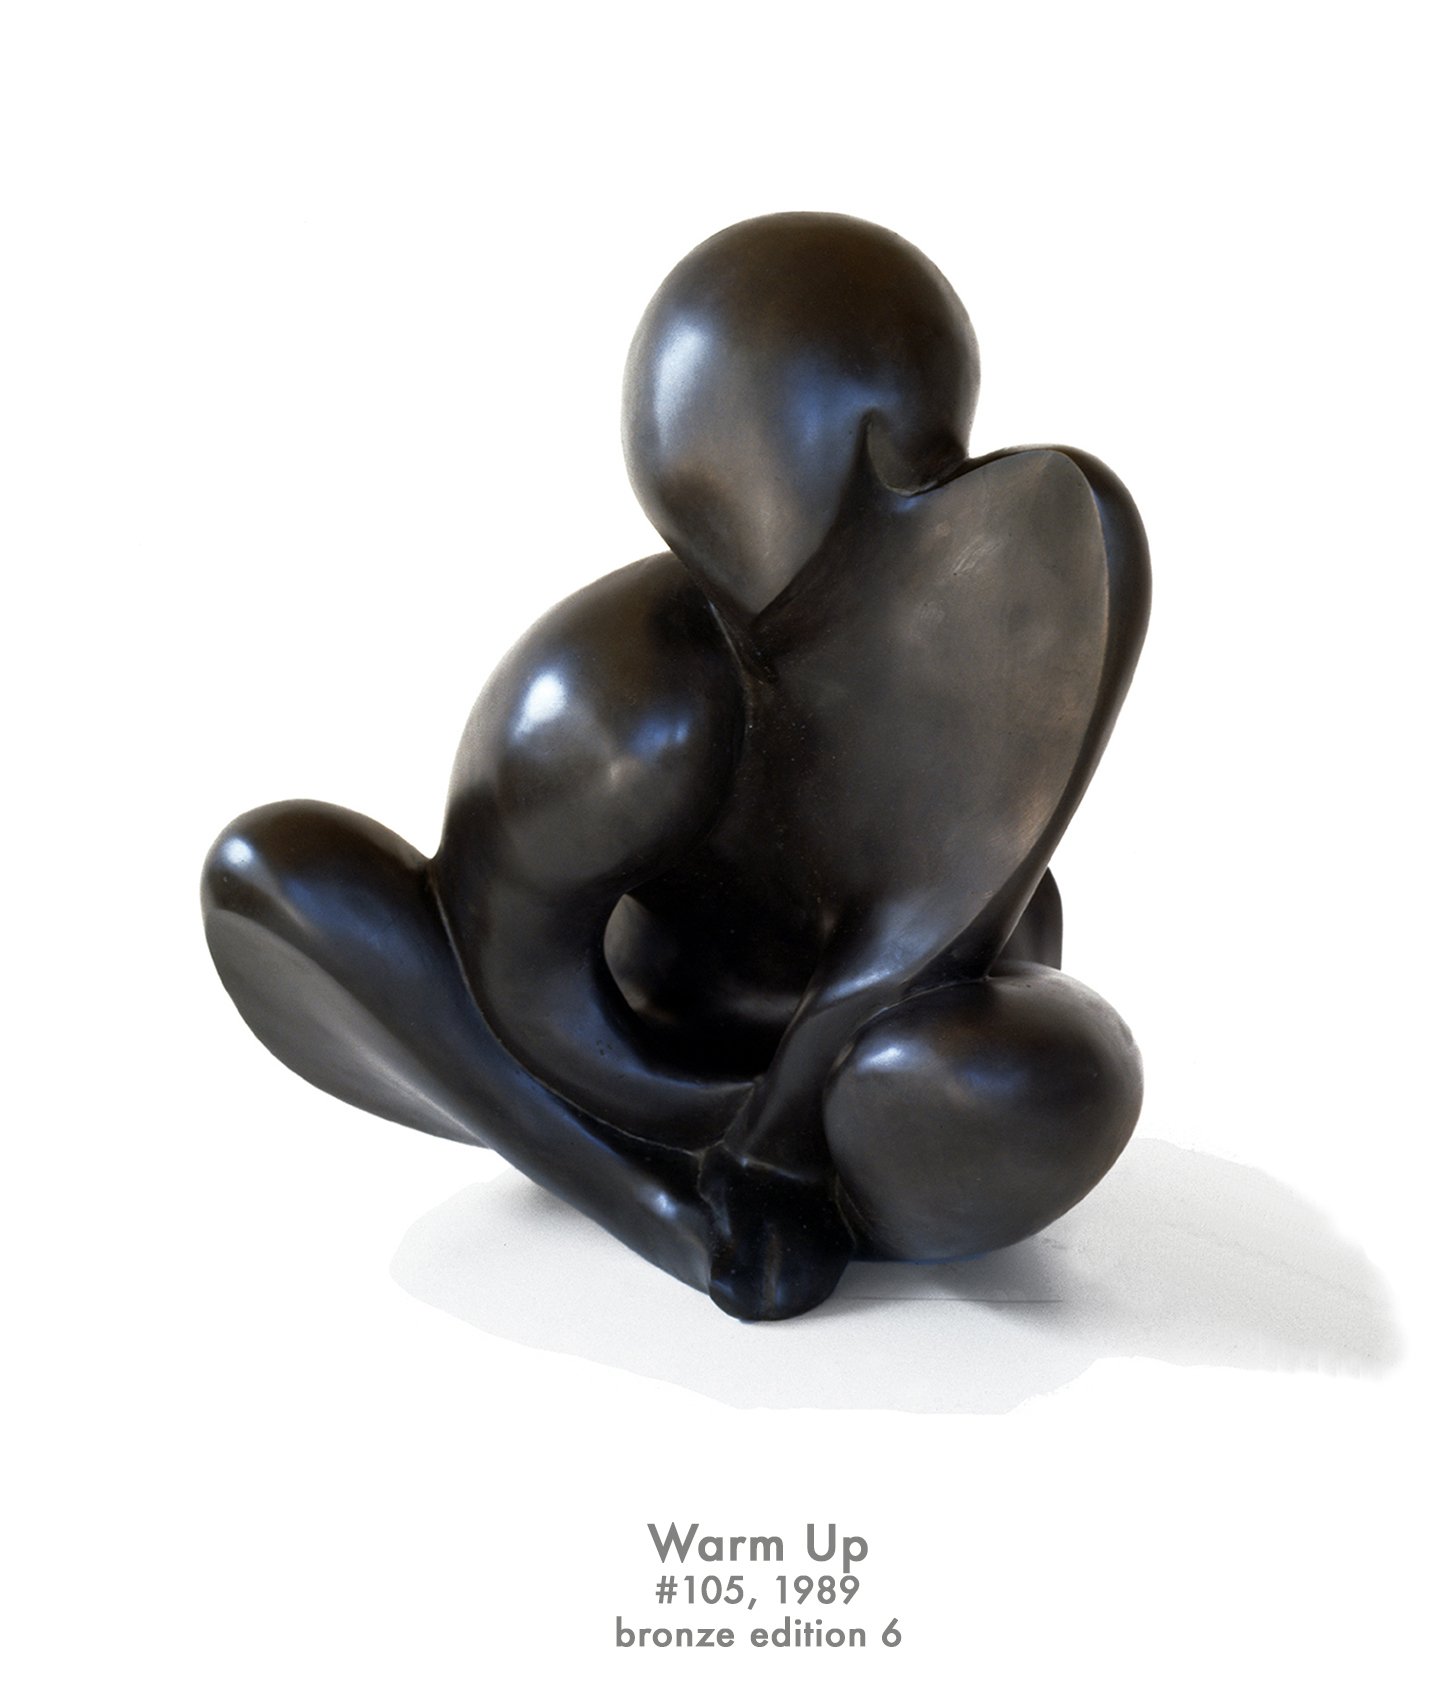 Warm Up, 1989, bronze, #105